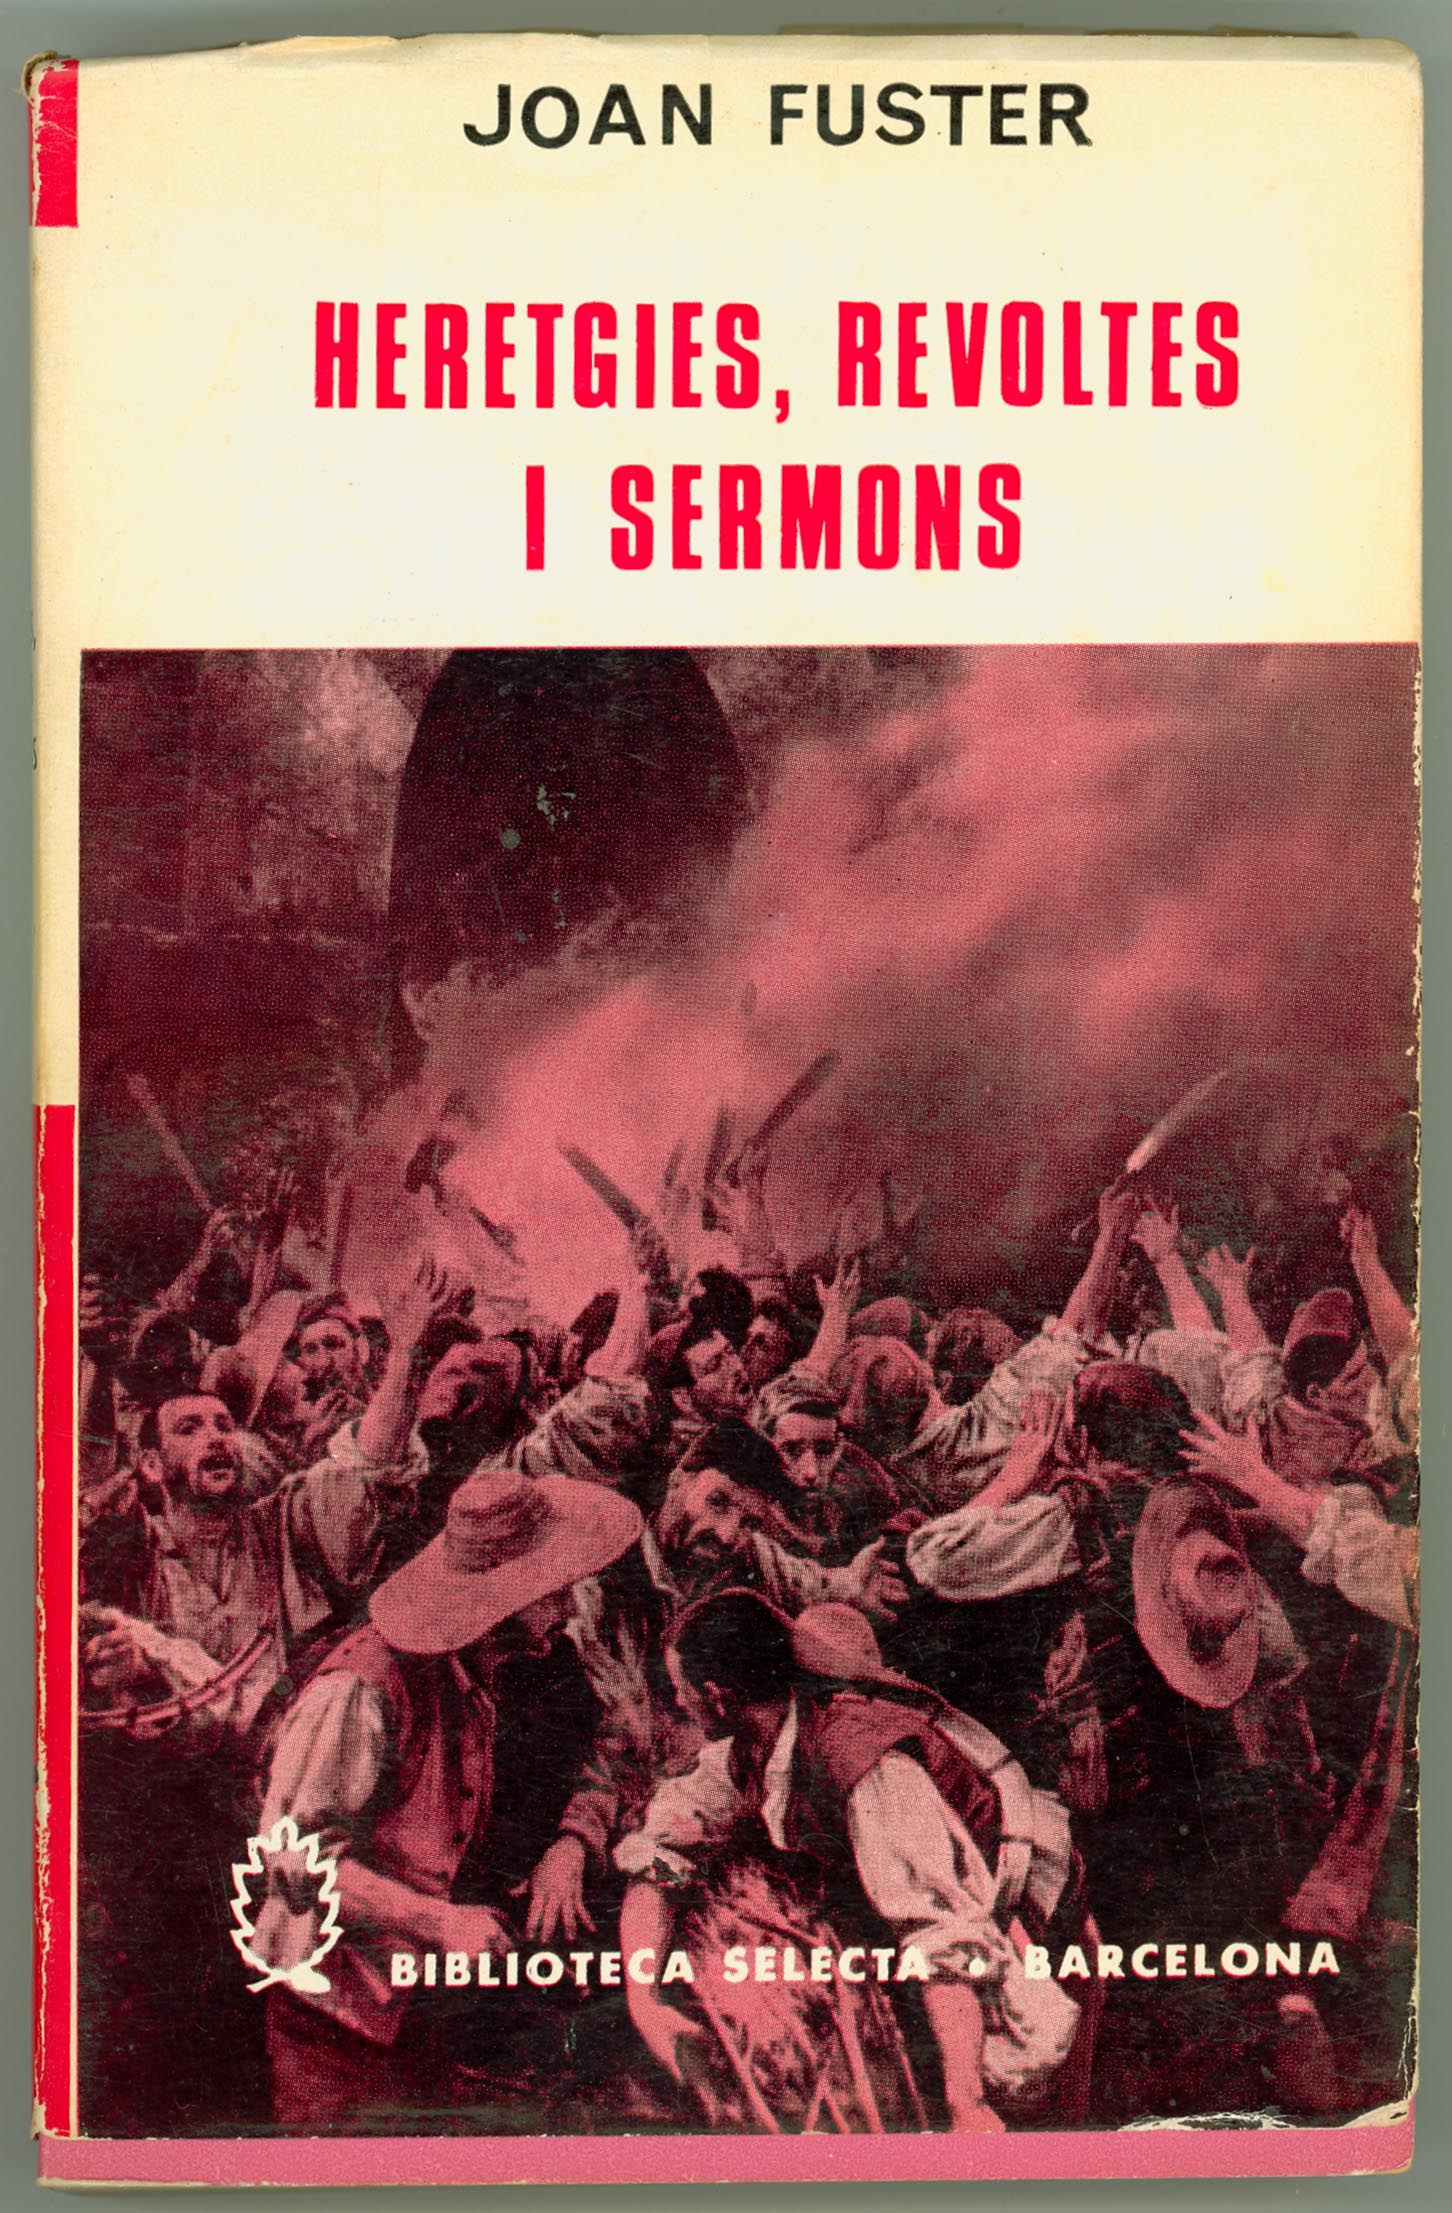 Heretgies, revoltes i sermons